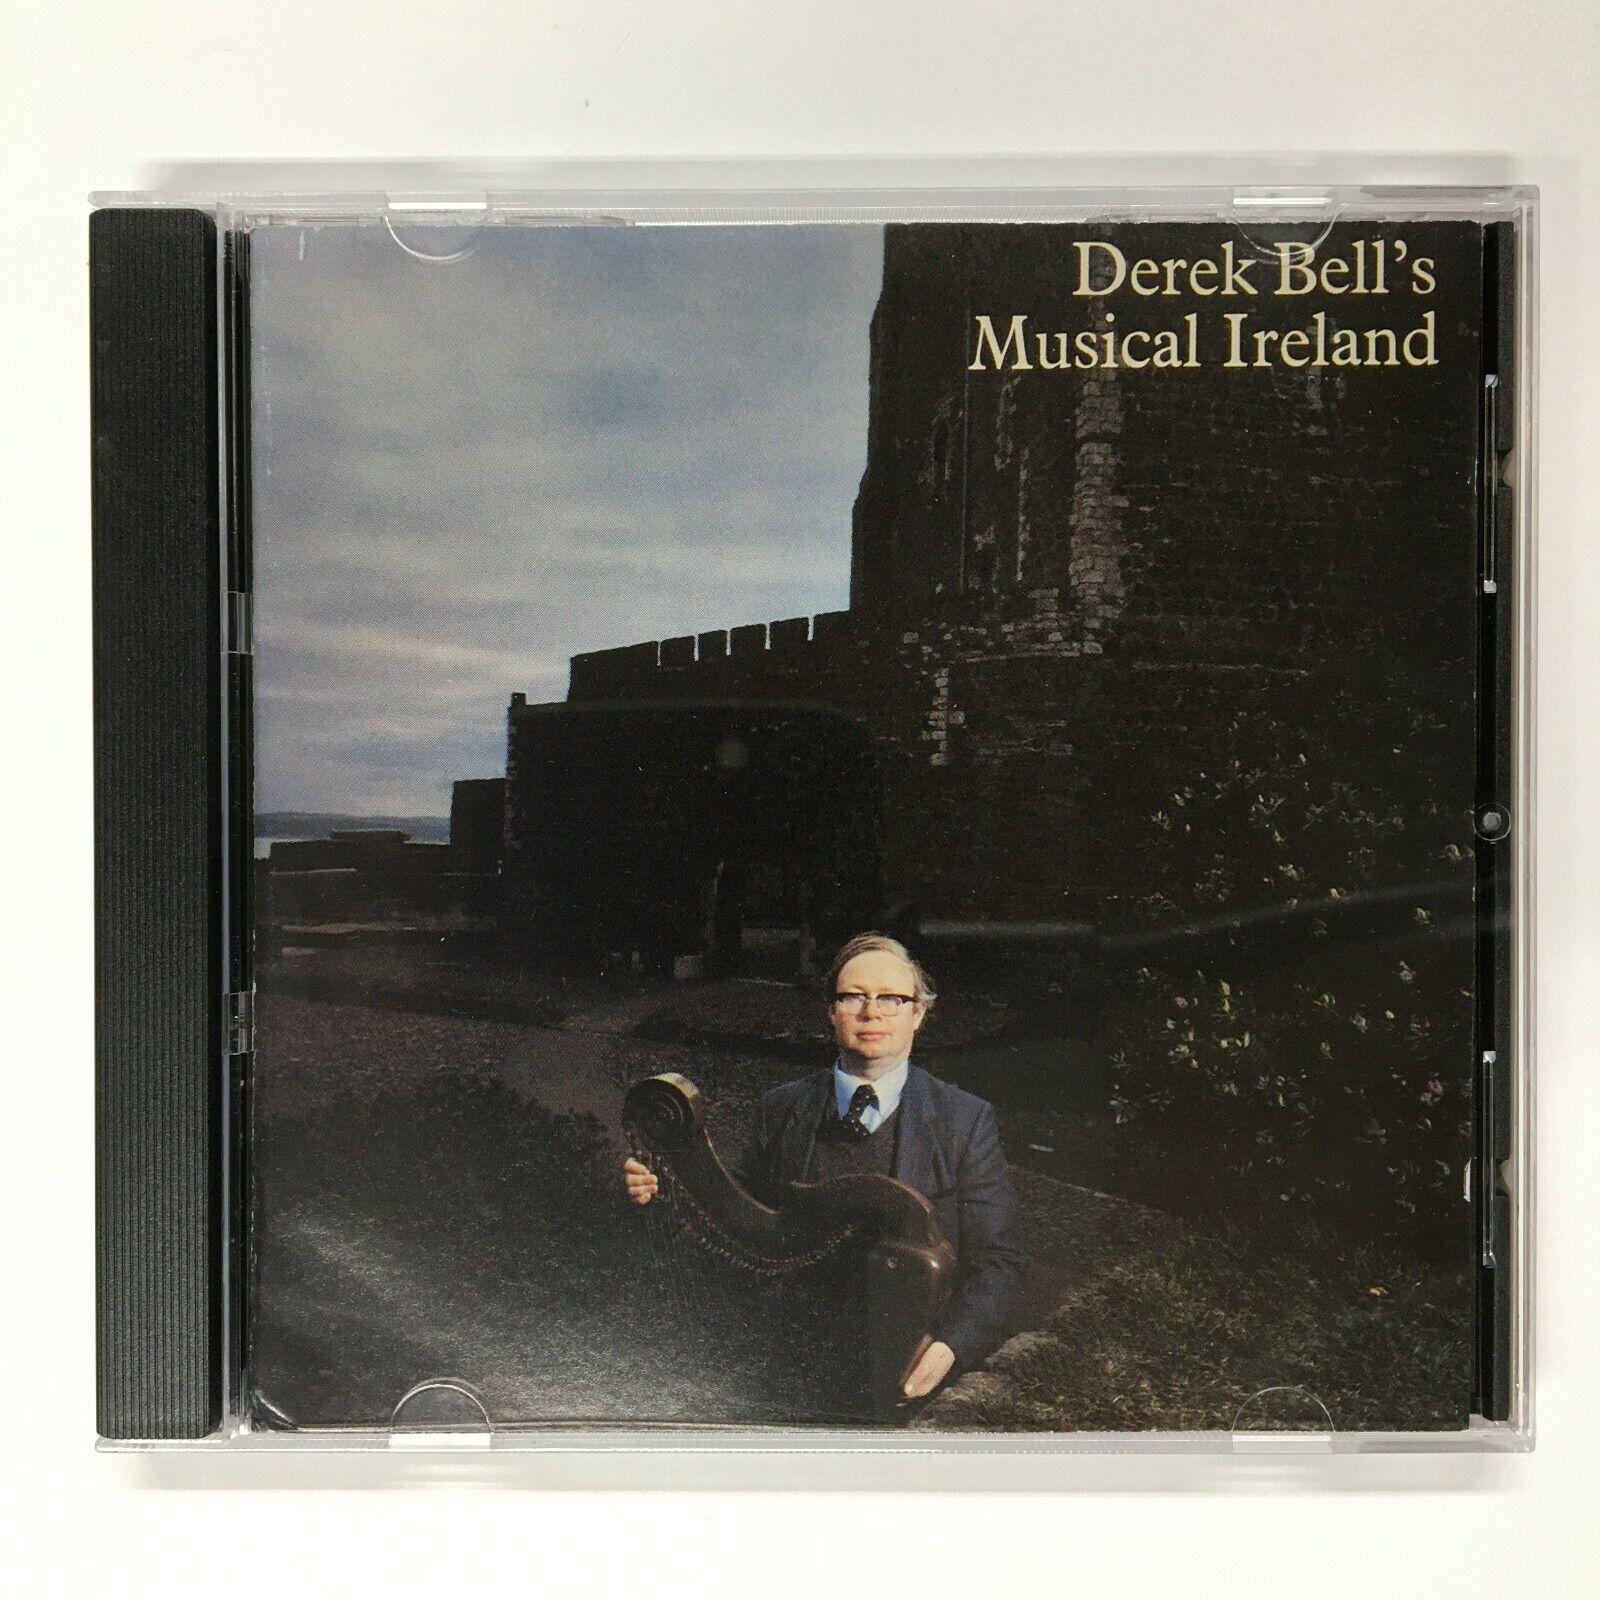 Derek Bell's Musical Ireland by Derek Bell (CD, 1989, Shanachie)